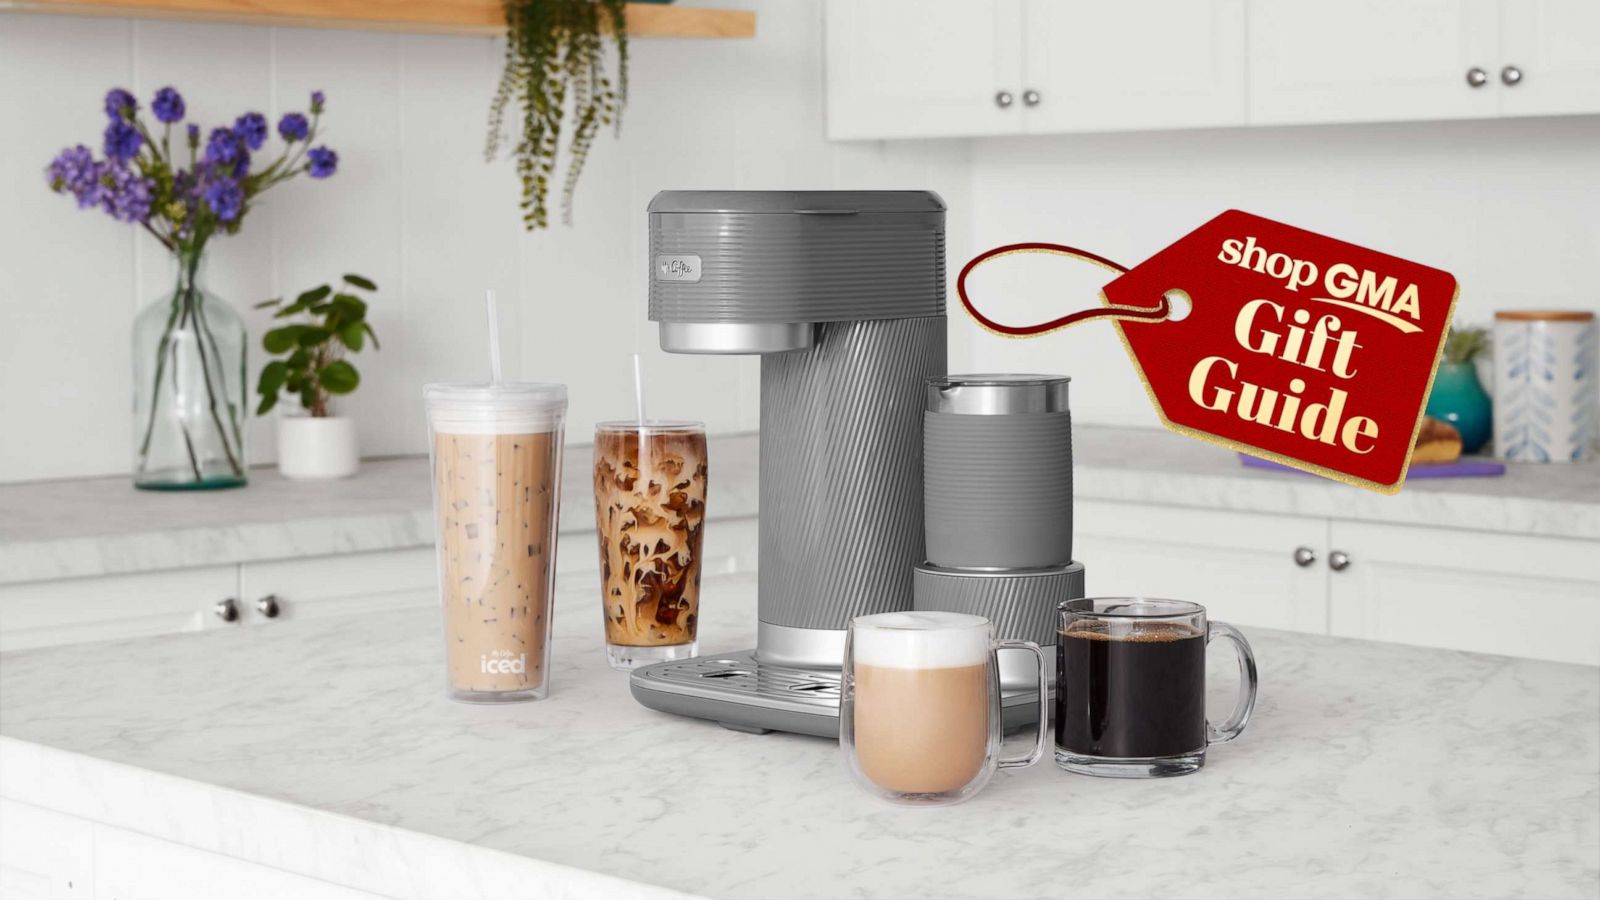 Cosori Coffee Mug Warmer & Mug Set Premium 24 Watt Stainless Steel New/Open  Box